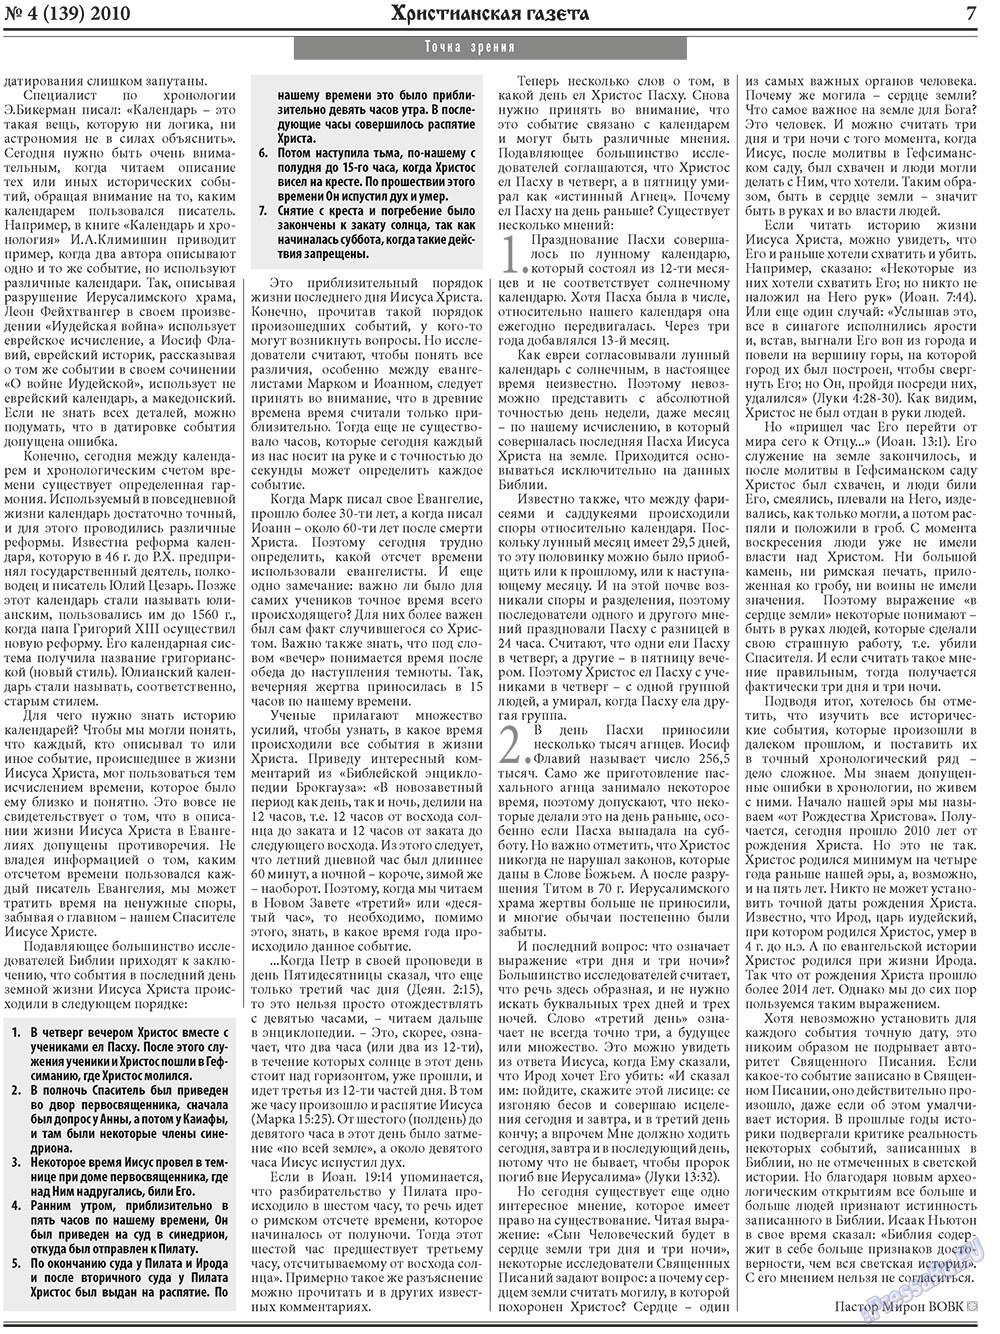 Hristianskaja gazeta (Zeitung). 2010 Jahr, Ausgabe 4, Seite 7